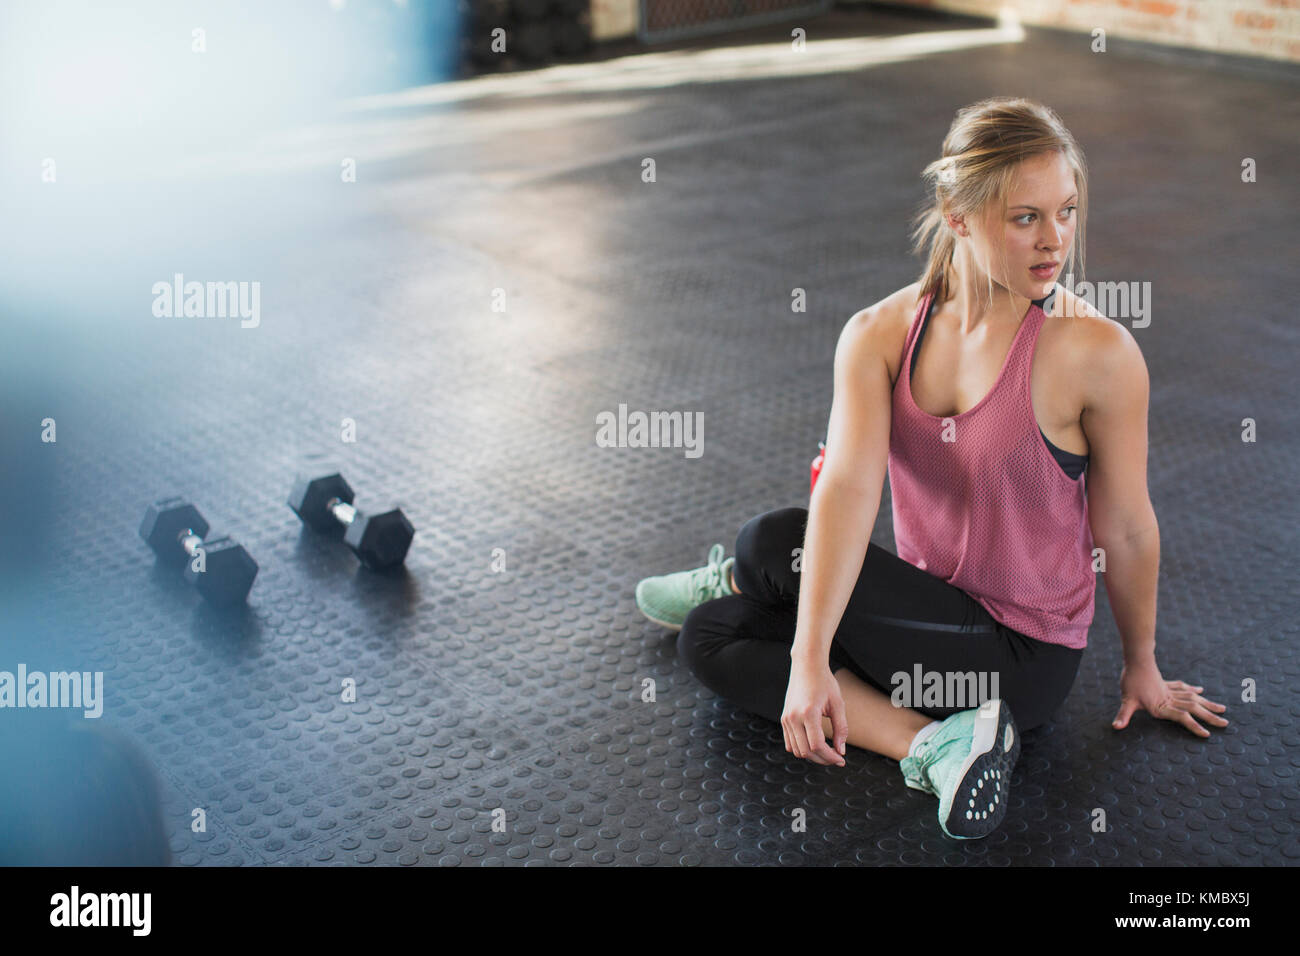 Junge Frau, die sich streckt, sich im Fitnessstudio neben den Hanteln dreht Stockfoto